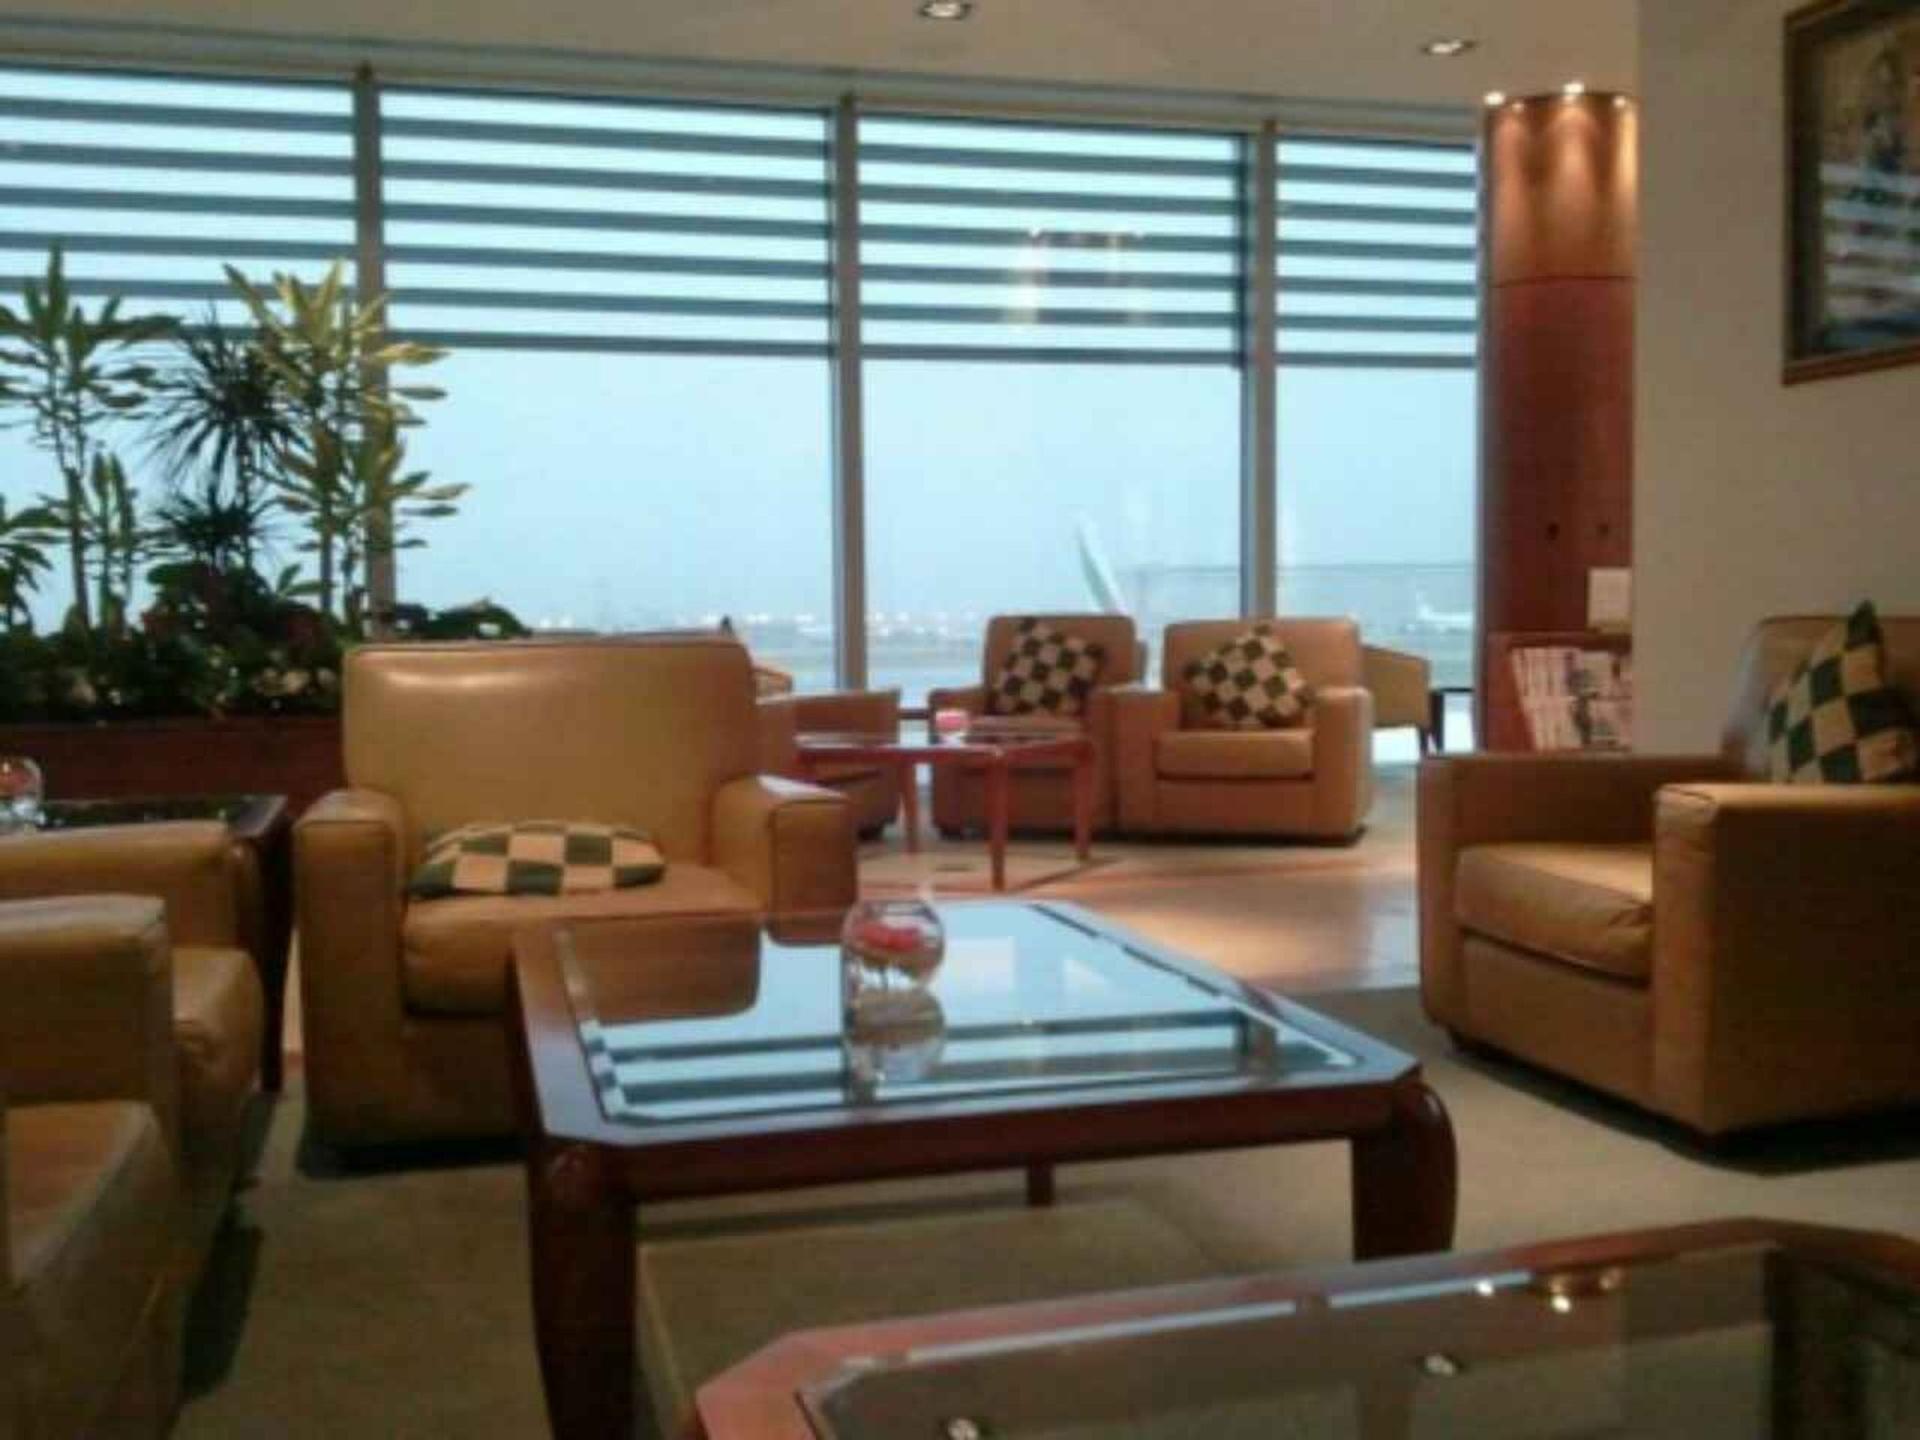 The Emirates Lounge image 1 of 10